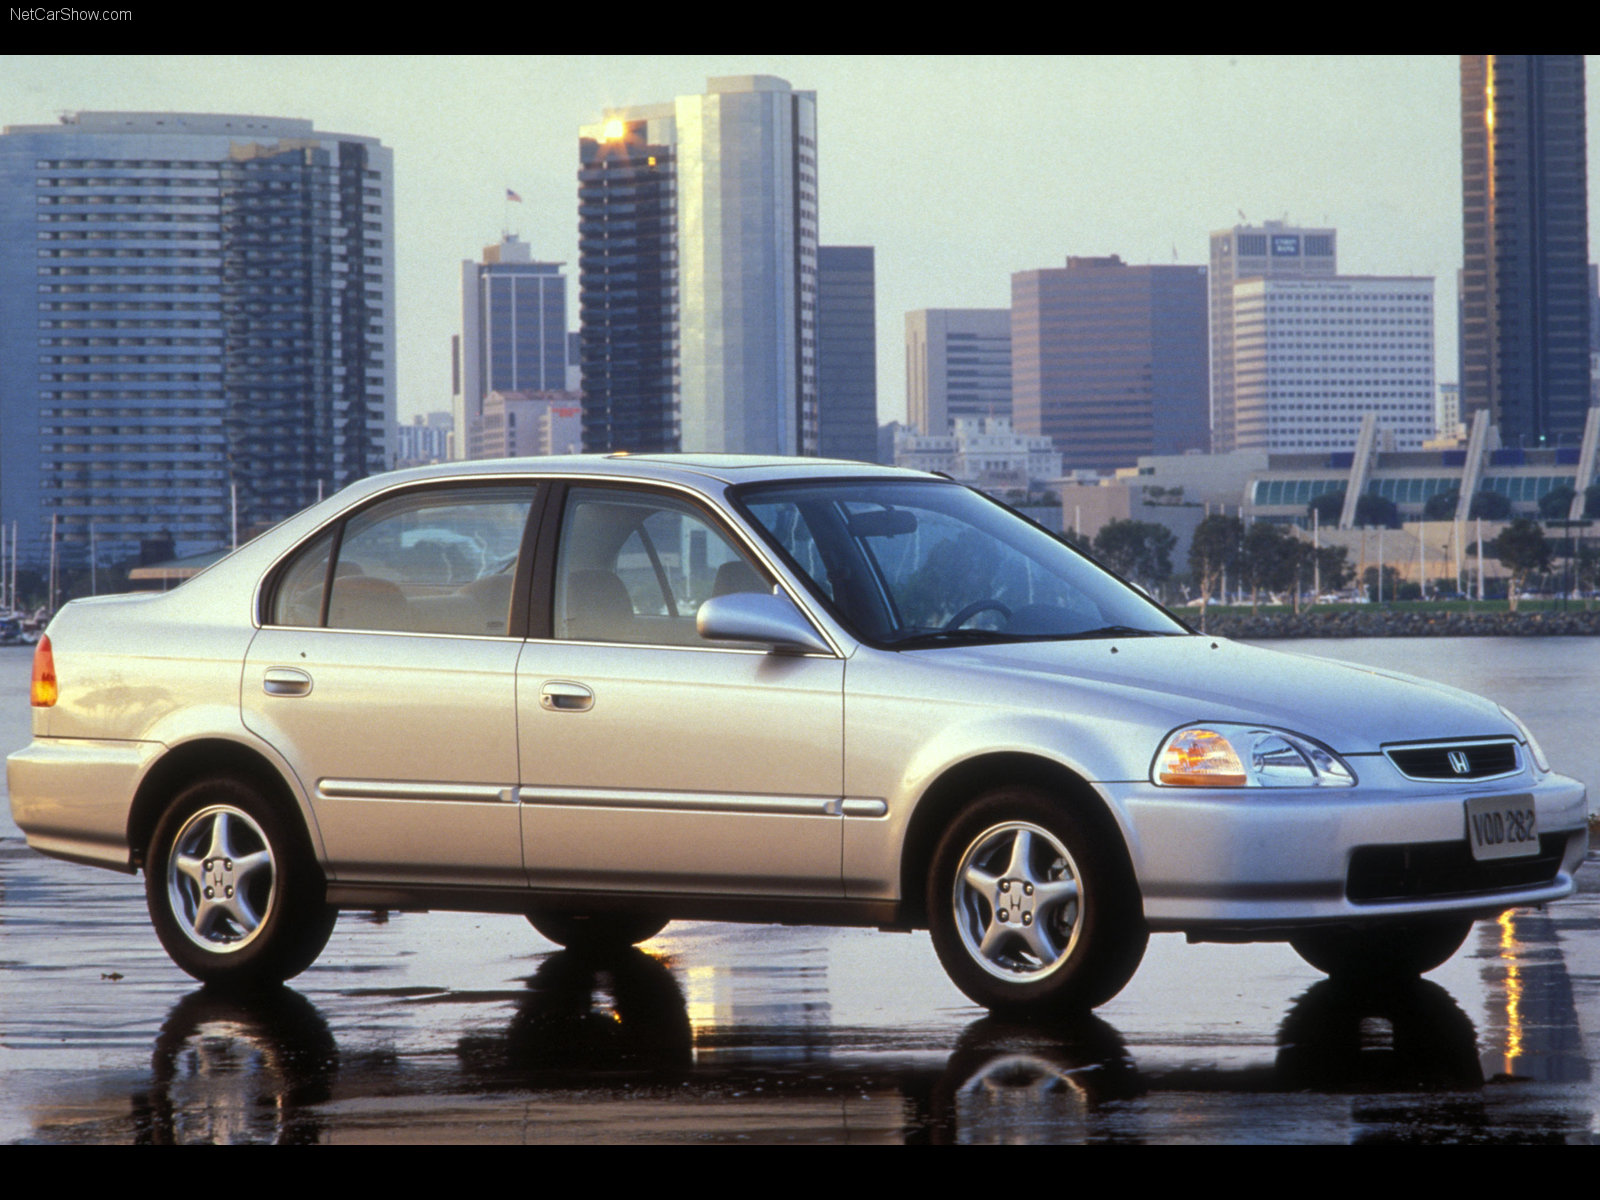 Honda Civic Sedan 1995 Honda-Civic_Sedan-1995-1600-05